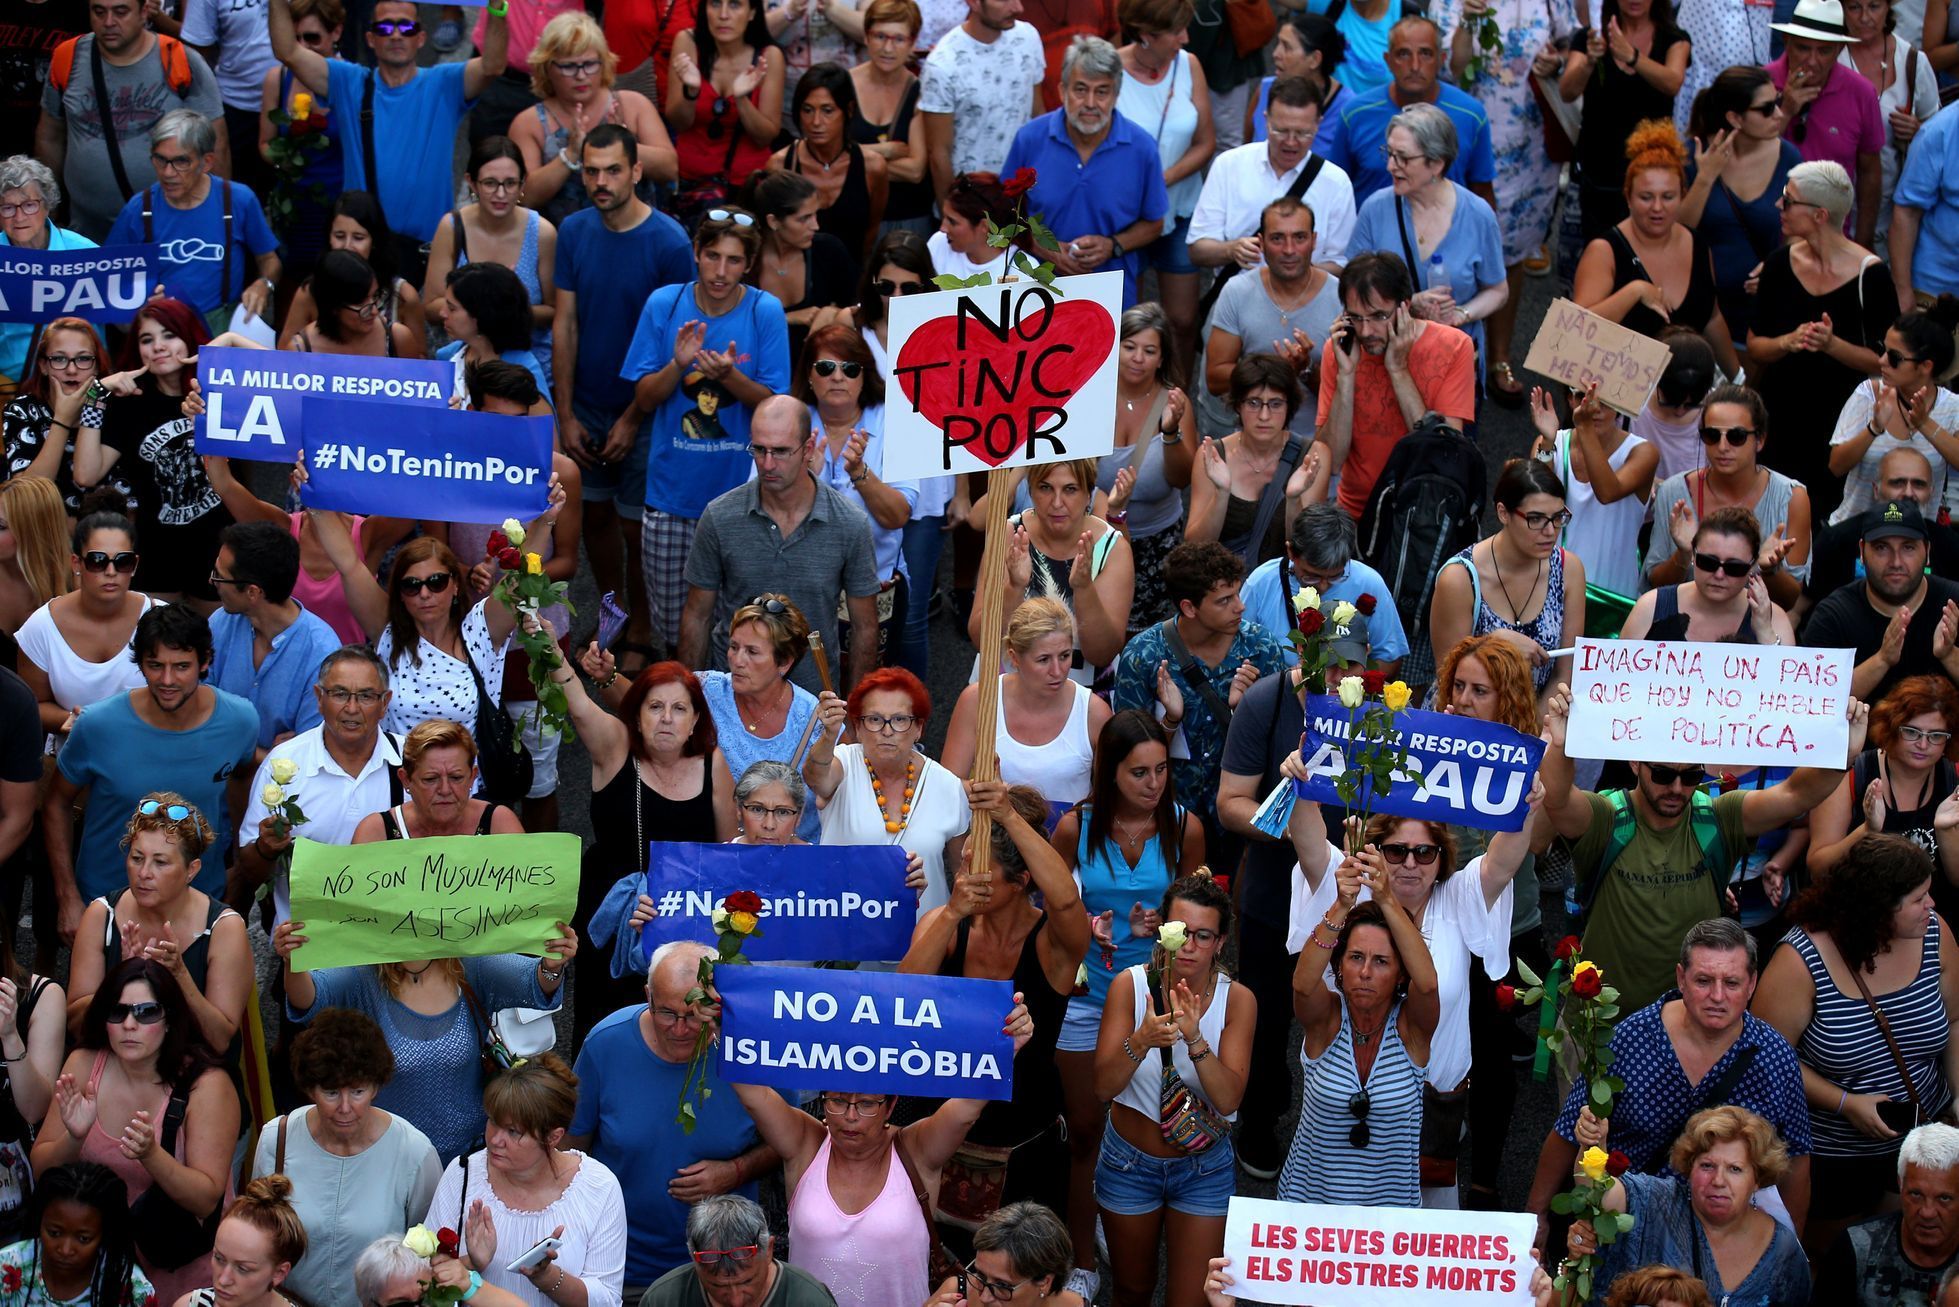 Pochodu jednoty proti terorismu s heslem "Nemáme strach" se v Barceloně účastnilo na půl milionu lidí